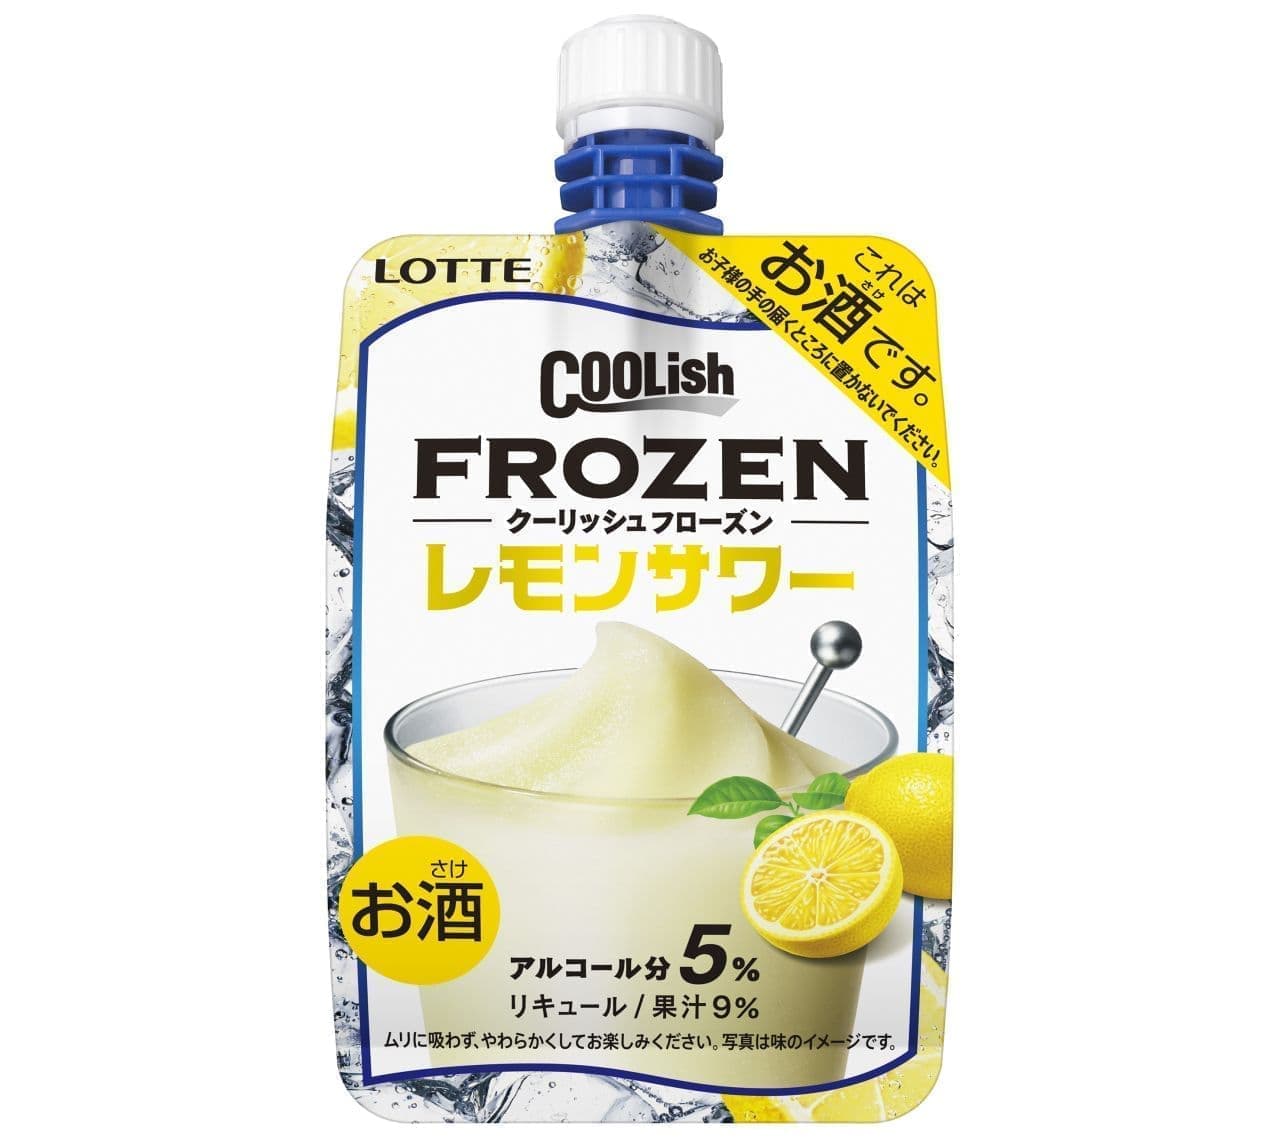 Lotte "Coolish Frozen Lemon Sour